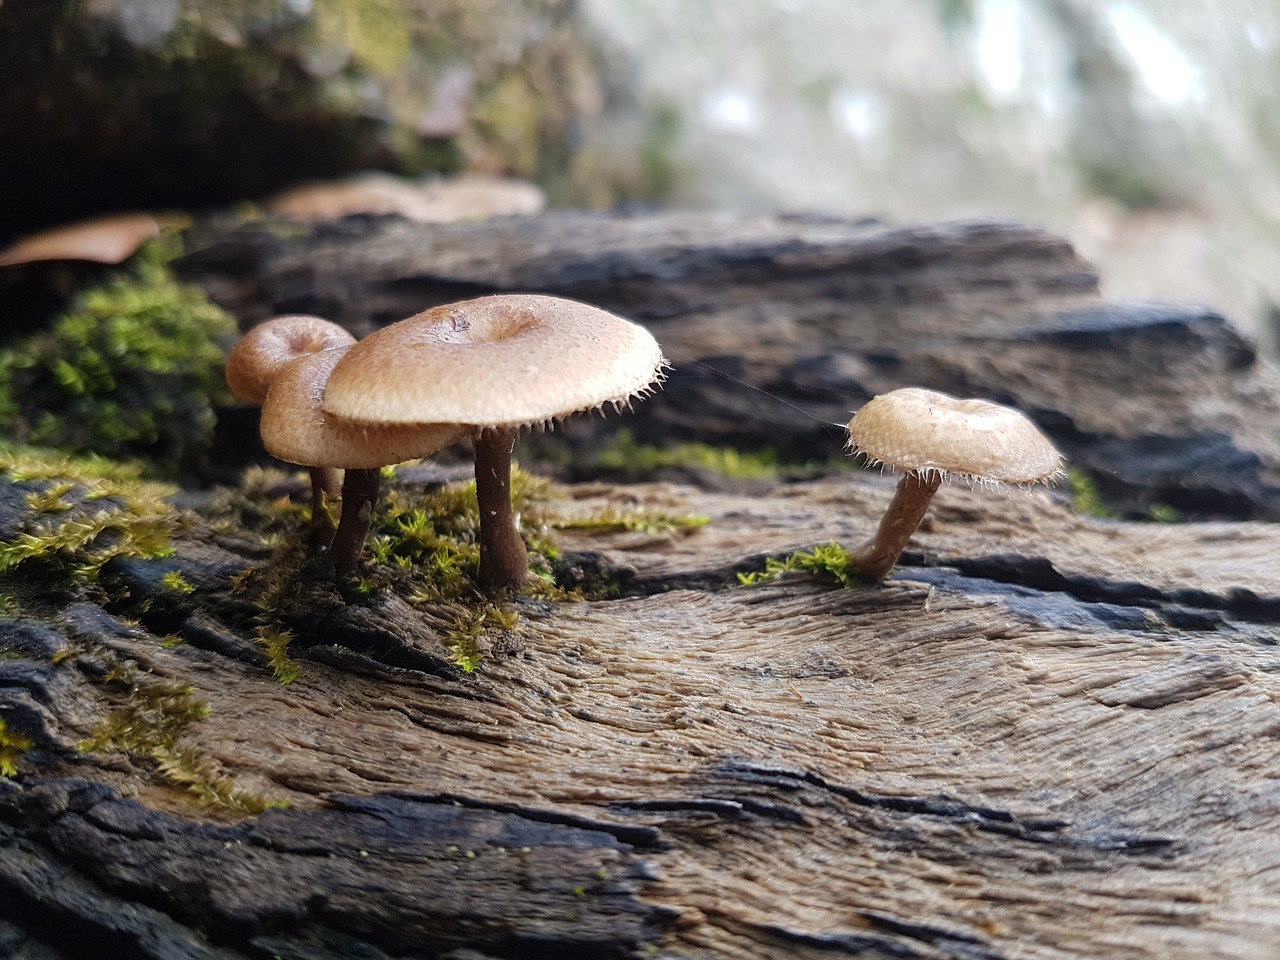 mushroom rainforest australia free photo